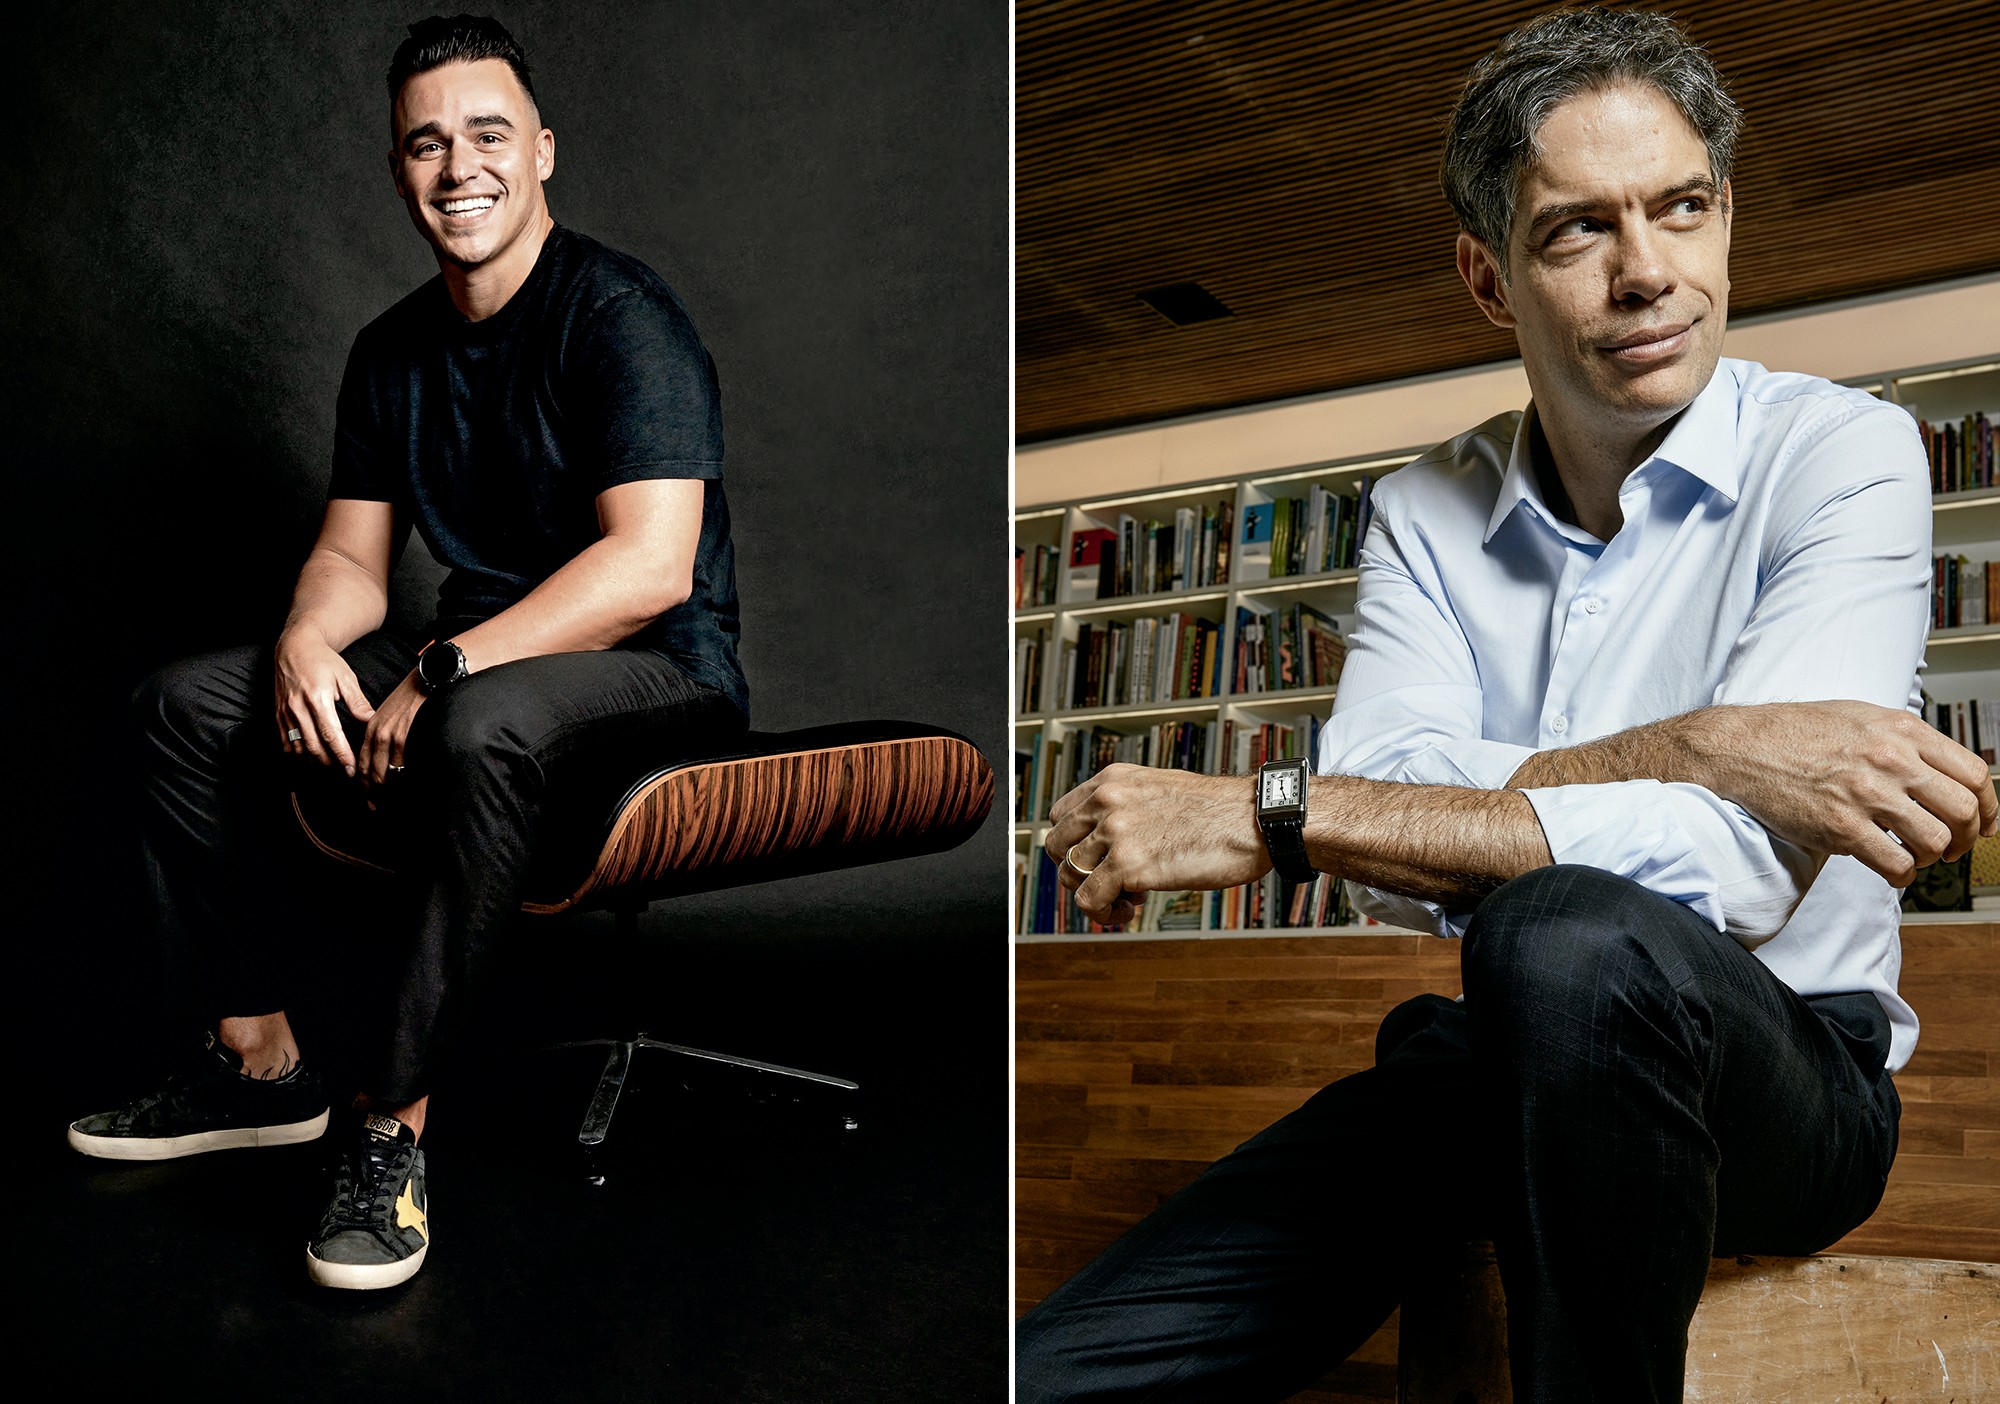 As vozes da conexão: Ricardo Dias e Ricardo Amorim são Top Voice e Top Influencer do LinkedIn (Foto: divulgação)